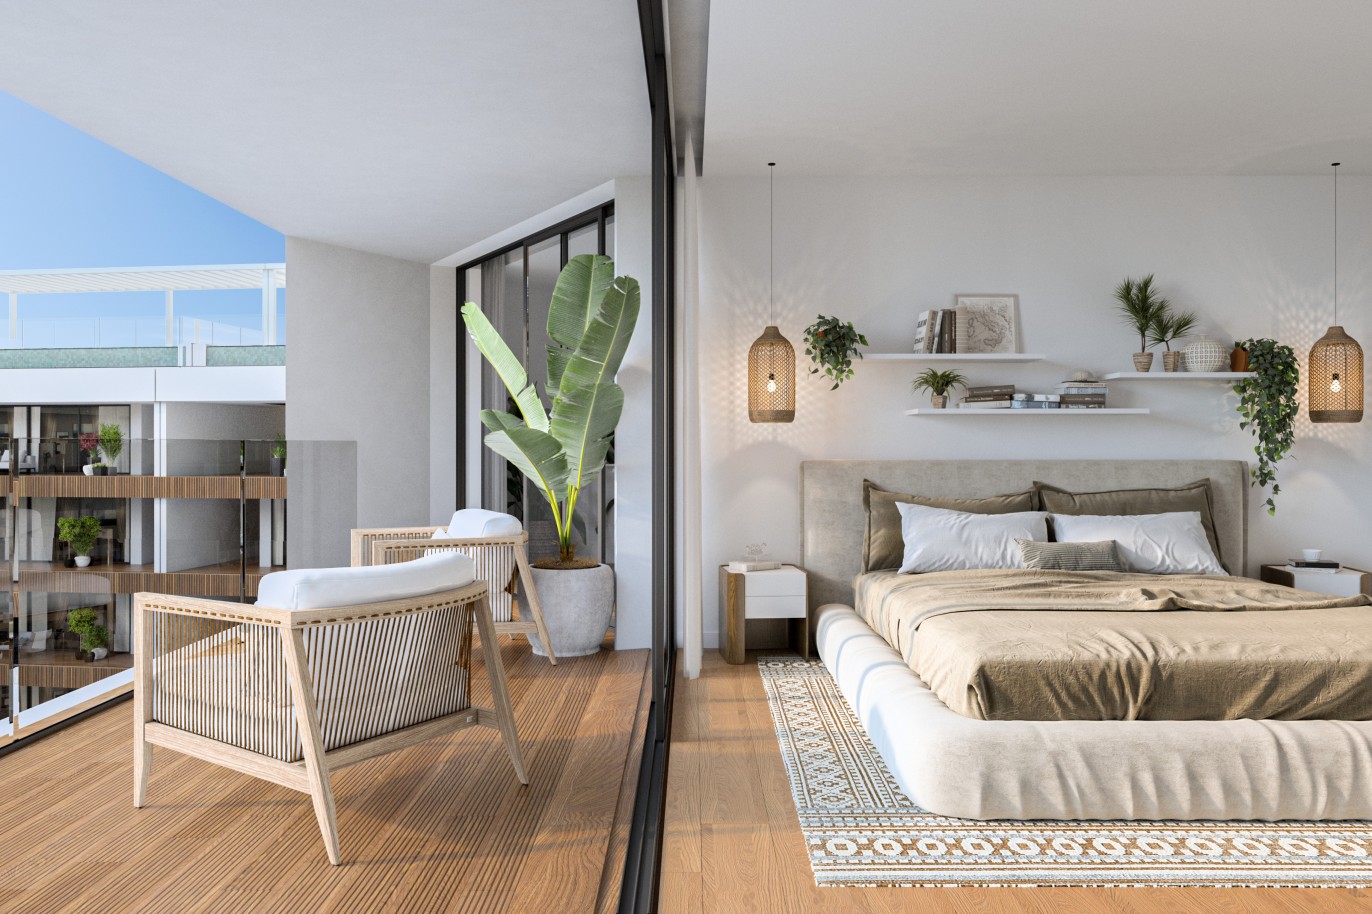 Appartements neufs avec vue sur mer, 1, 2 & 3 chambres, à vendre à Olhão, Algarve_244497